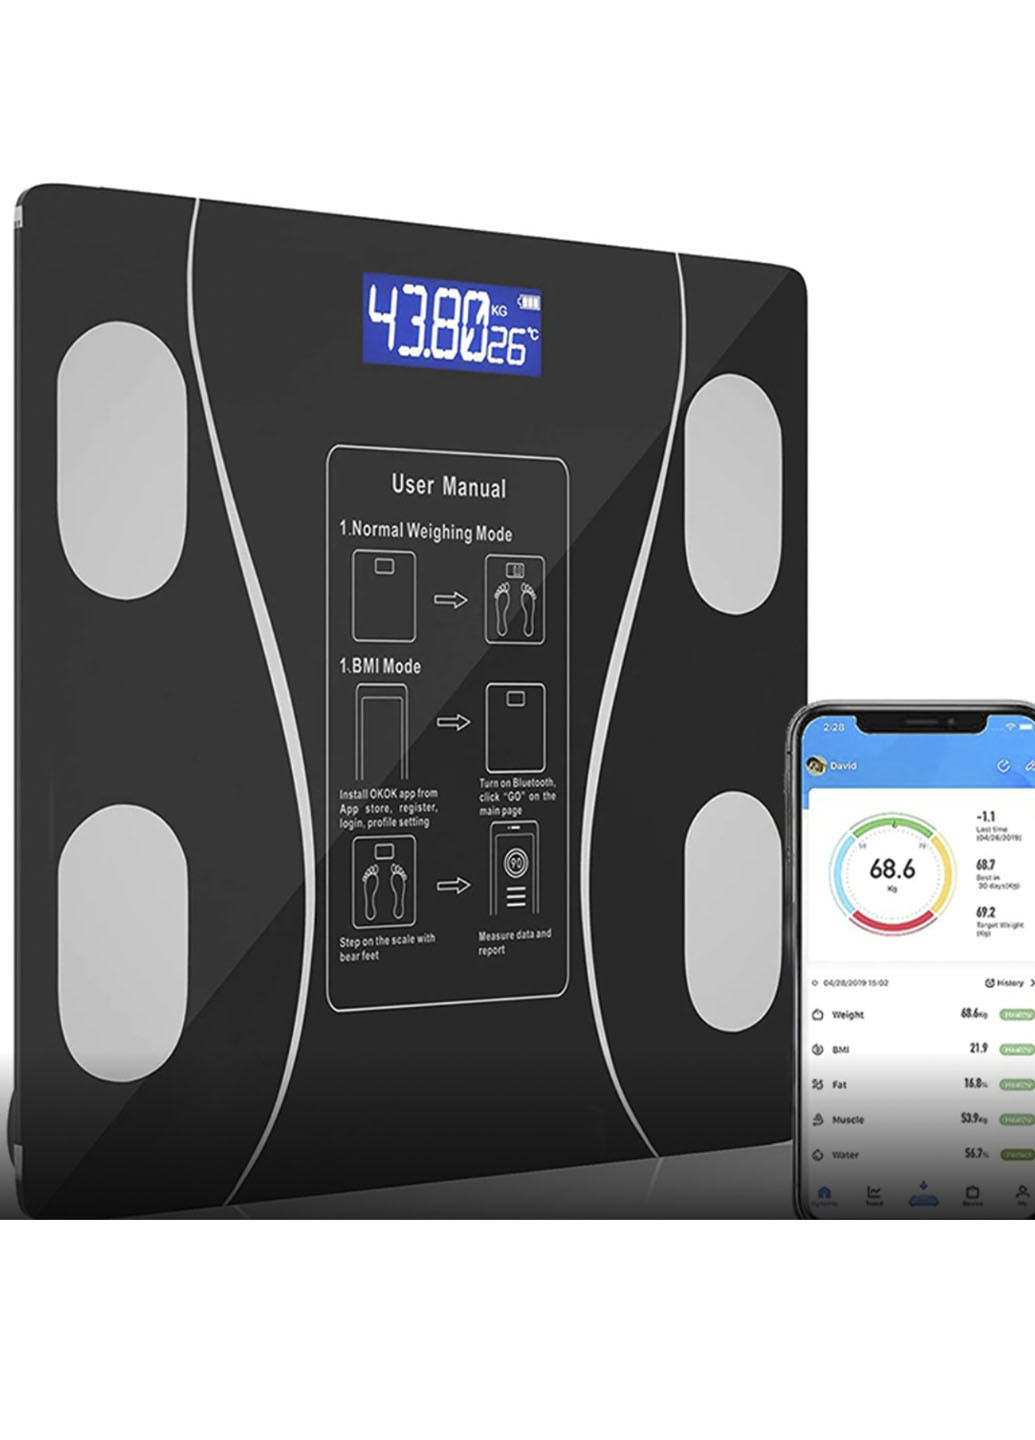 Напольные умные фитнес весы Bluetooth до 180 кг смарт весы с приложением Good Idea (252322419)